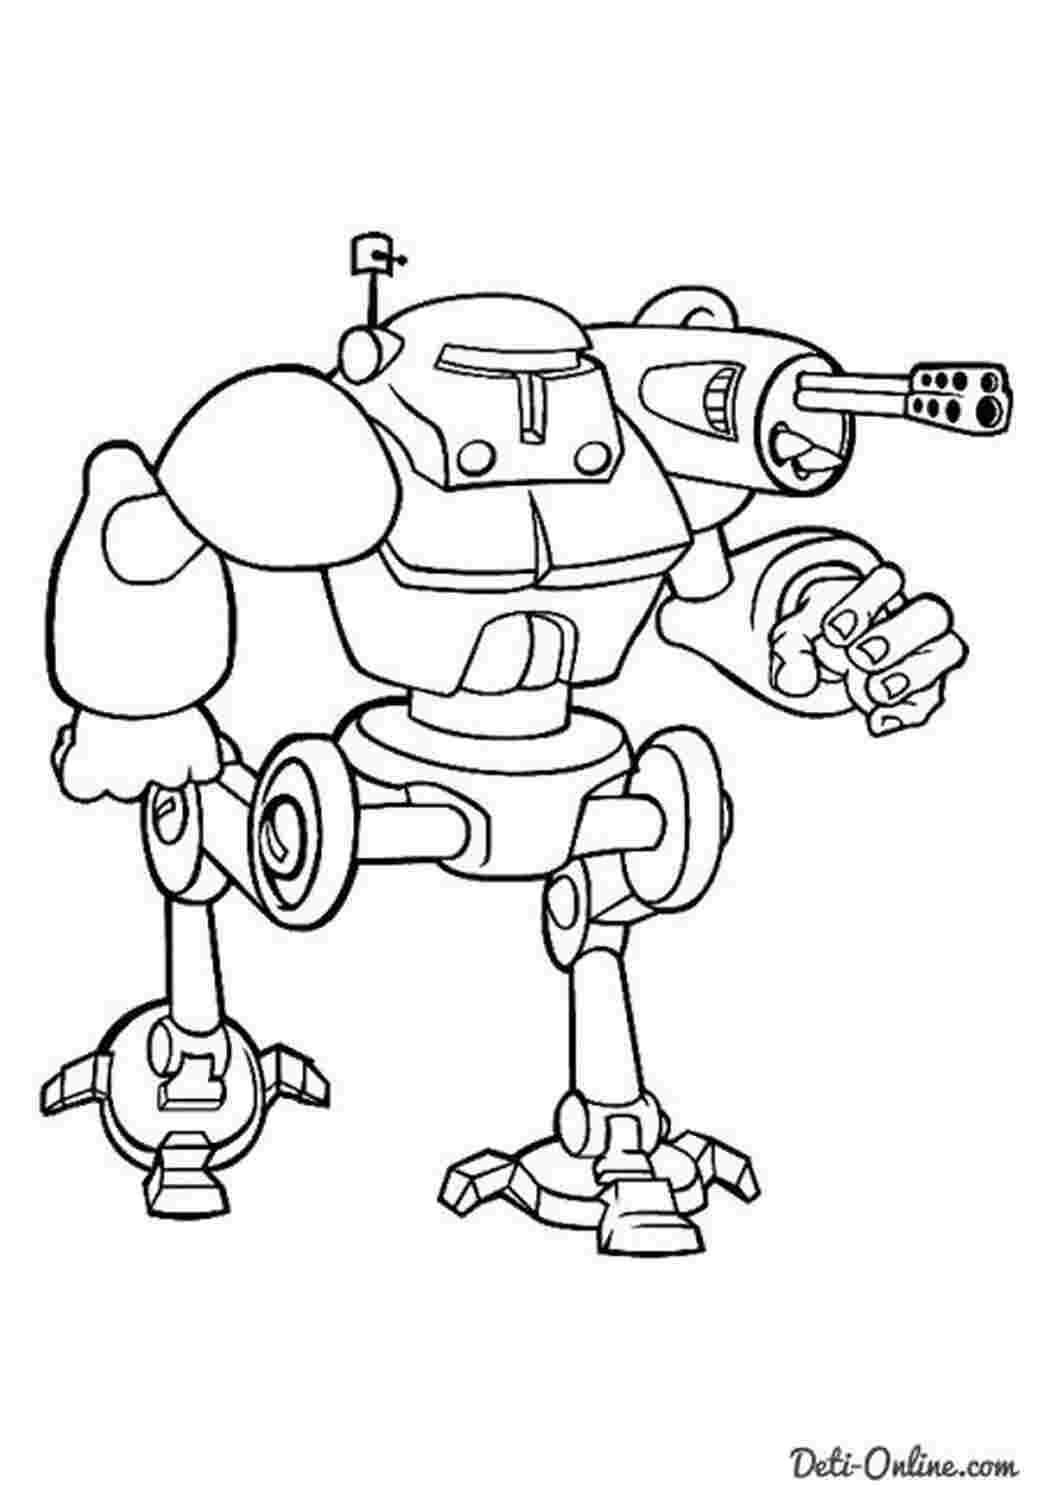 Раскраски Военные роботы с оружием и искусственным интеллектом Трансформеры и терминаторы